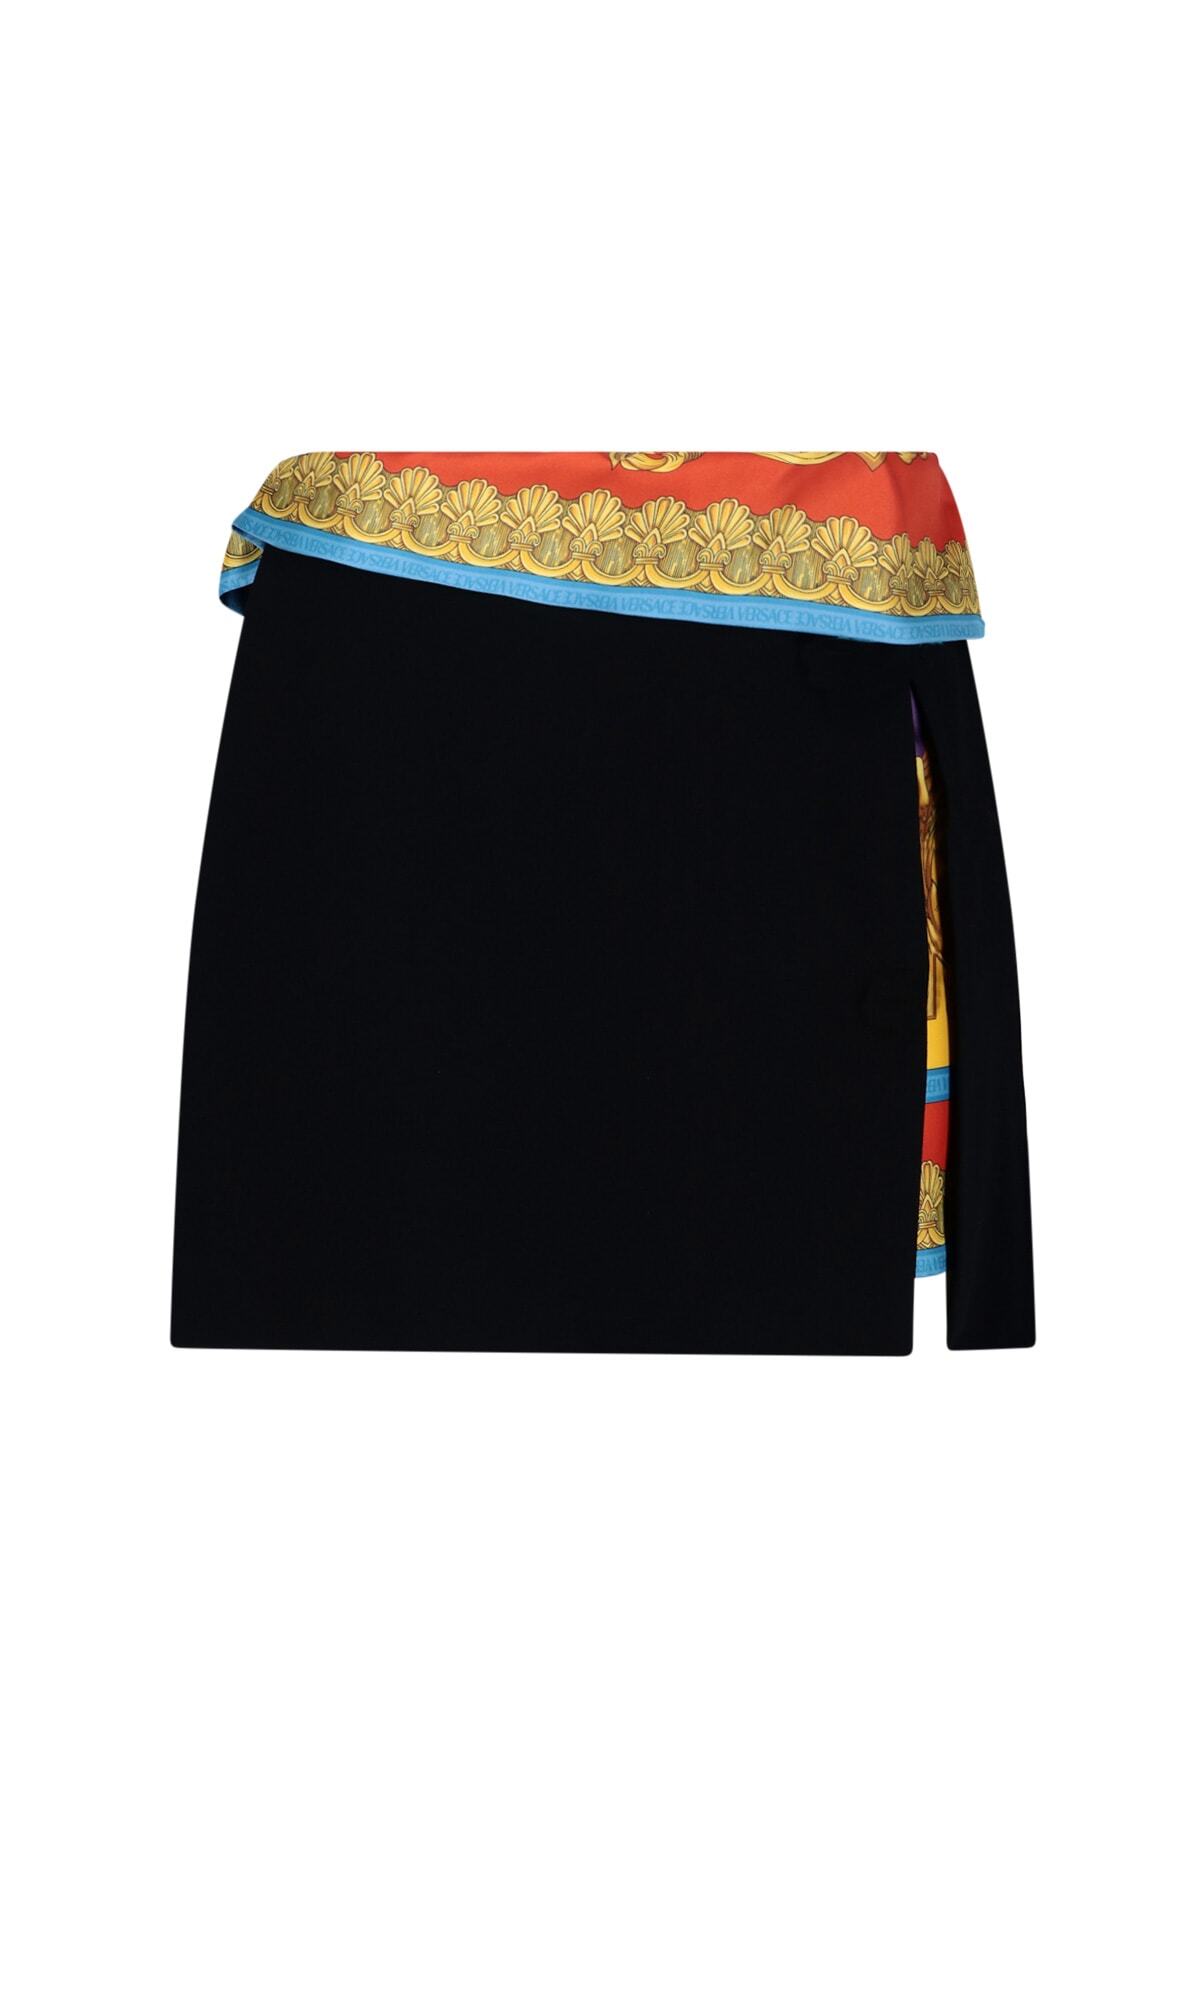 Versace Skirt in black